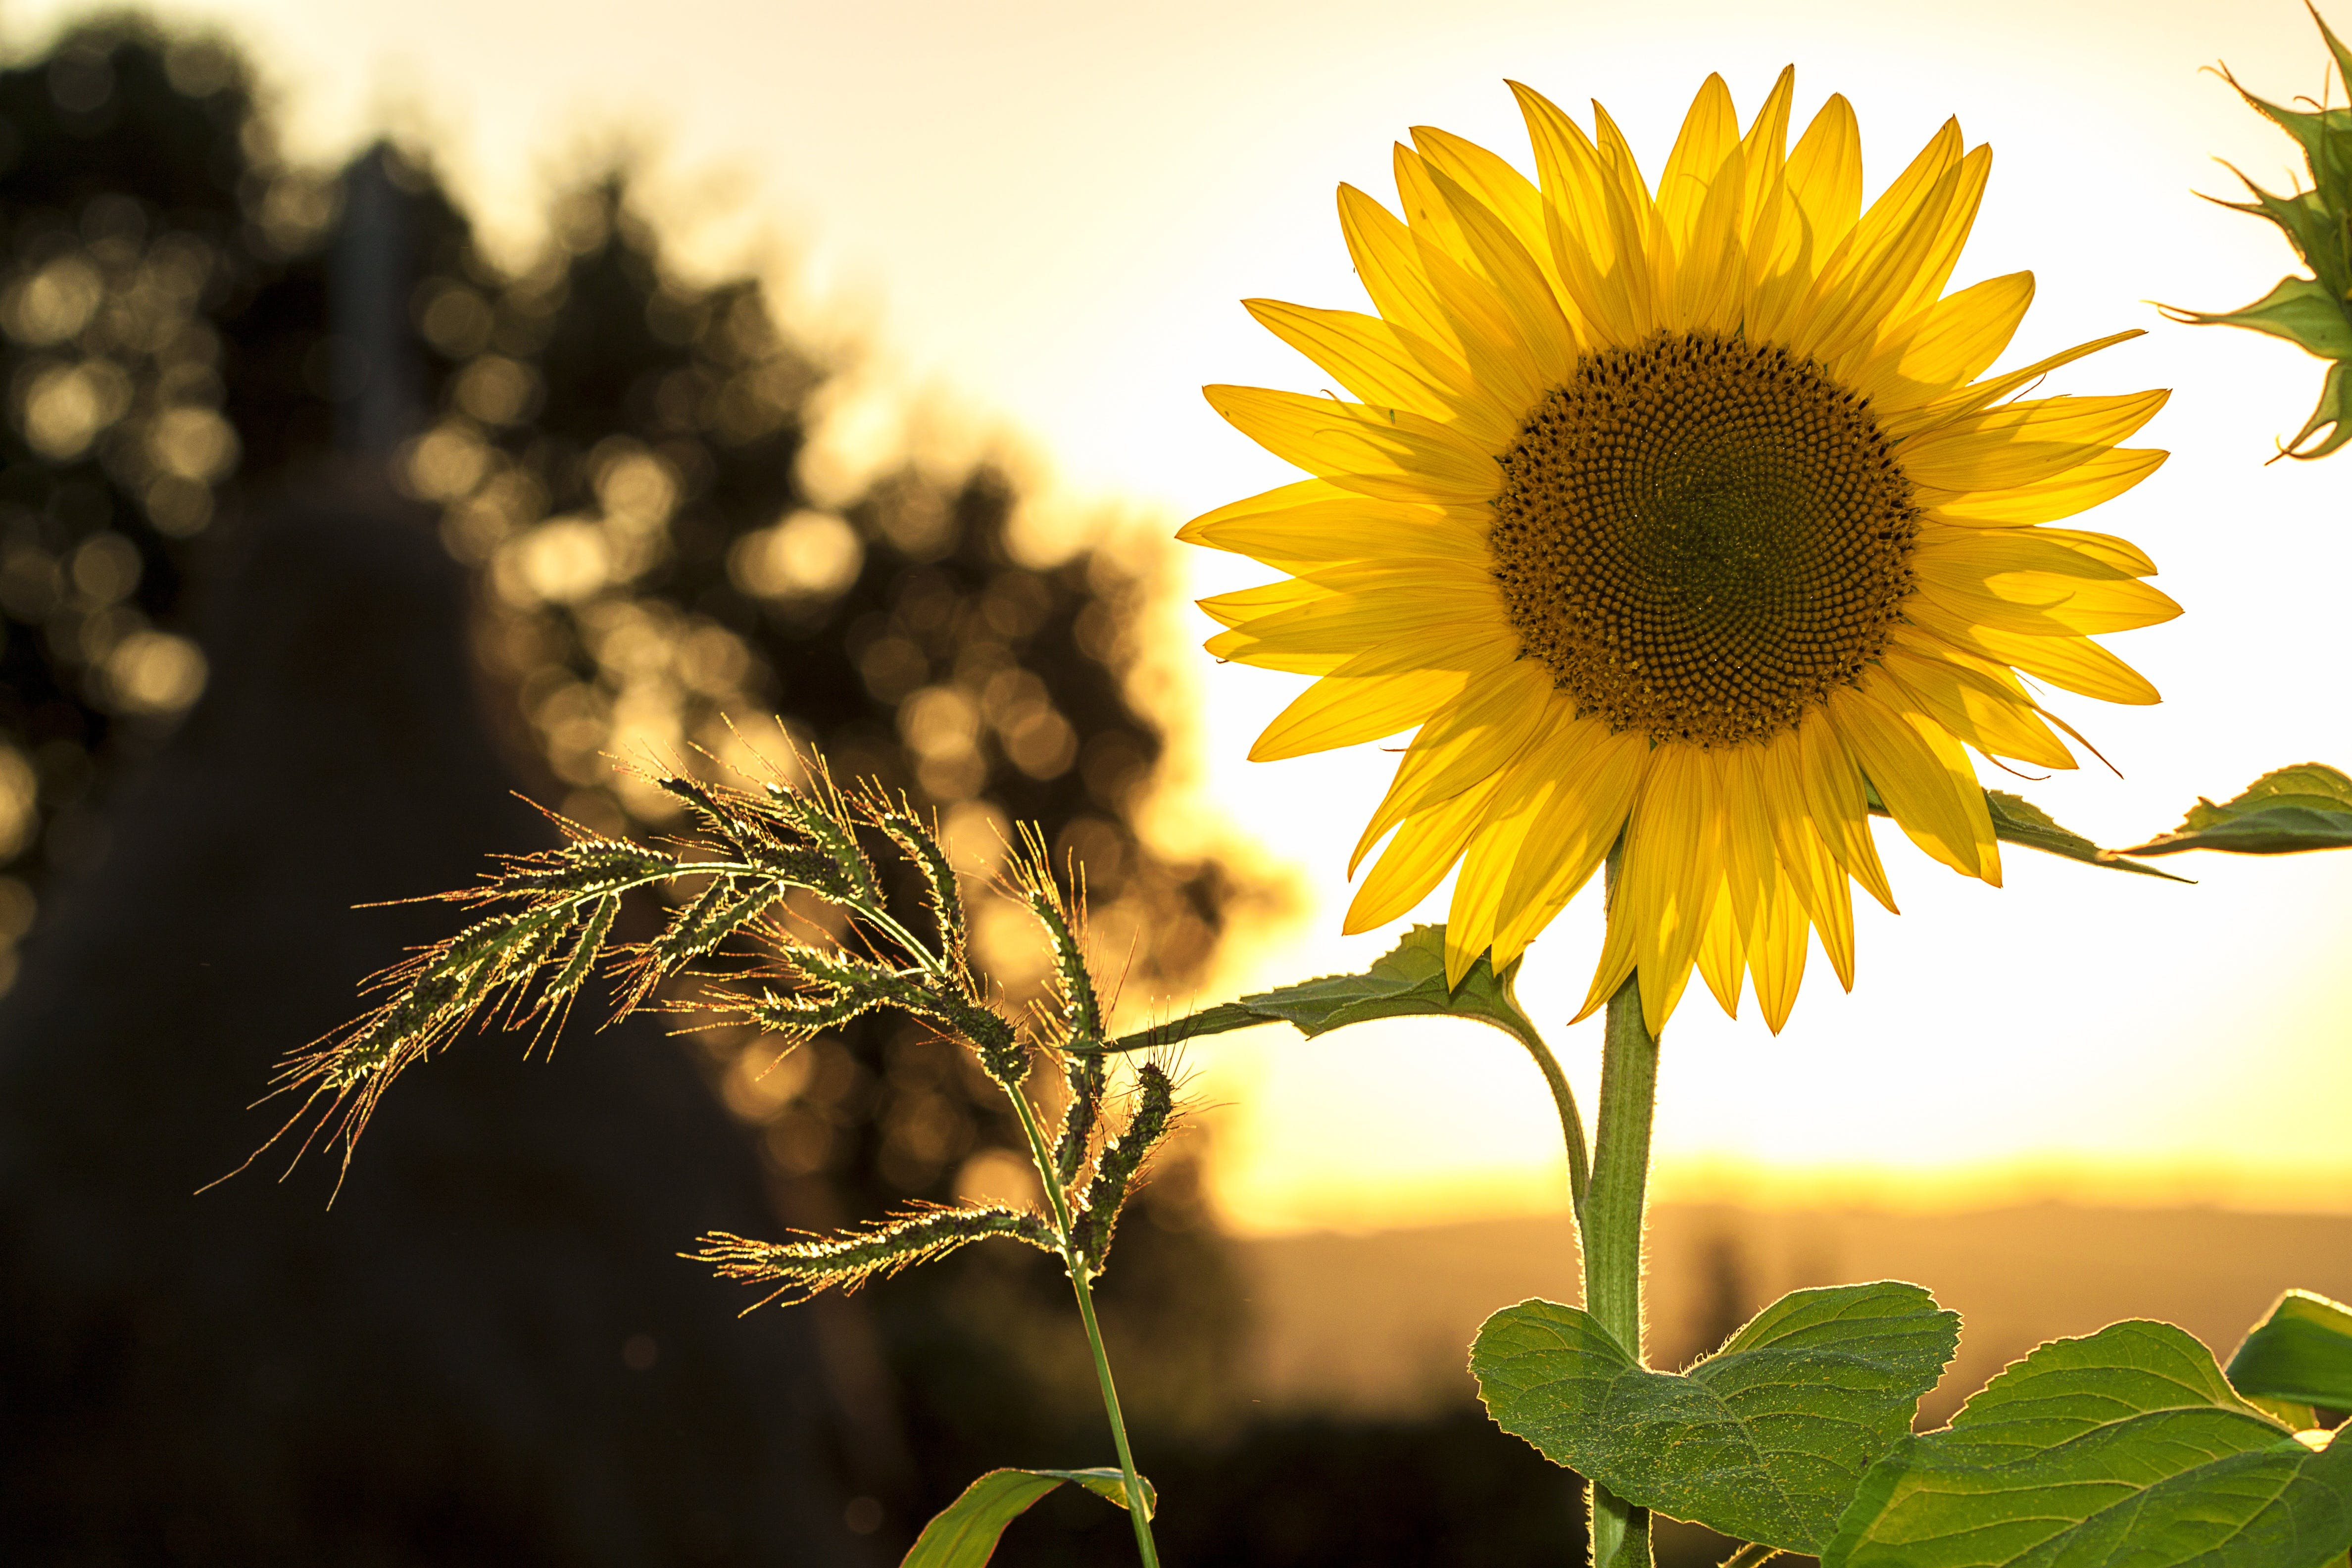 Das Bild zeigt eine Sonnenblume im Sonnenuntergang und steht symbolisch für Ressourcen, Waerme und Kraft